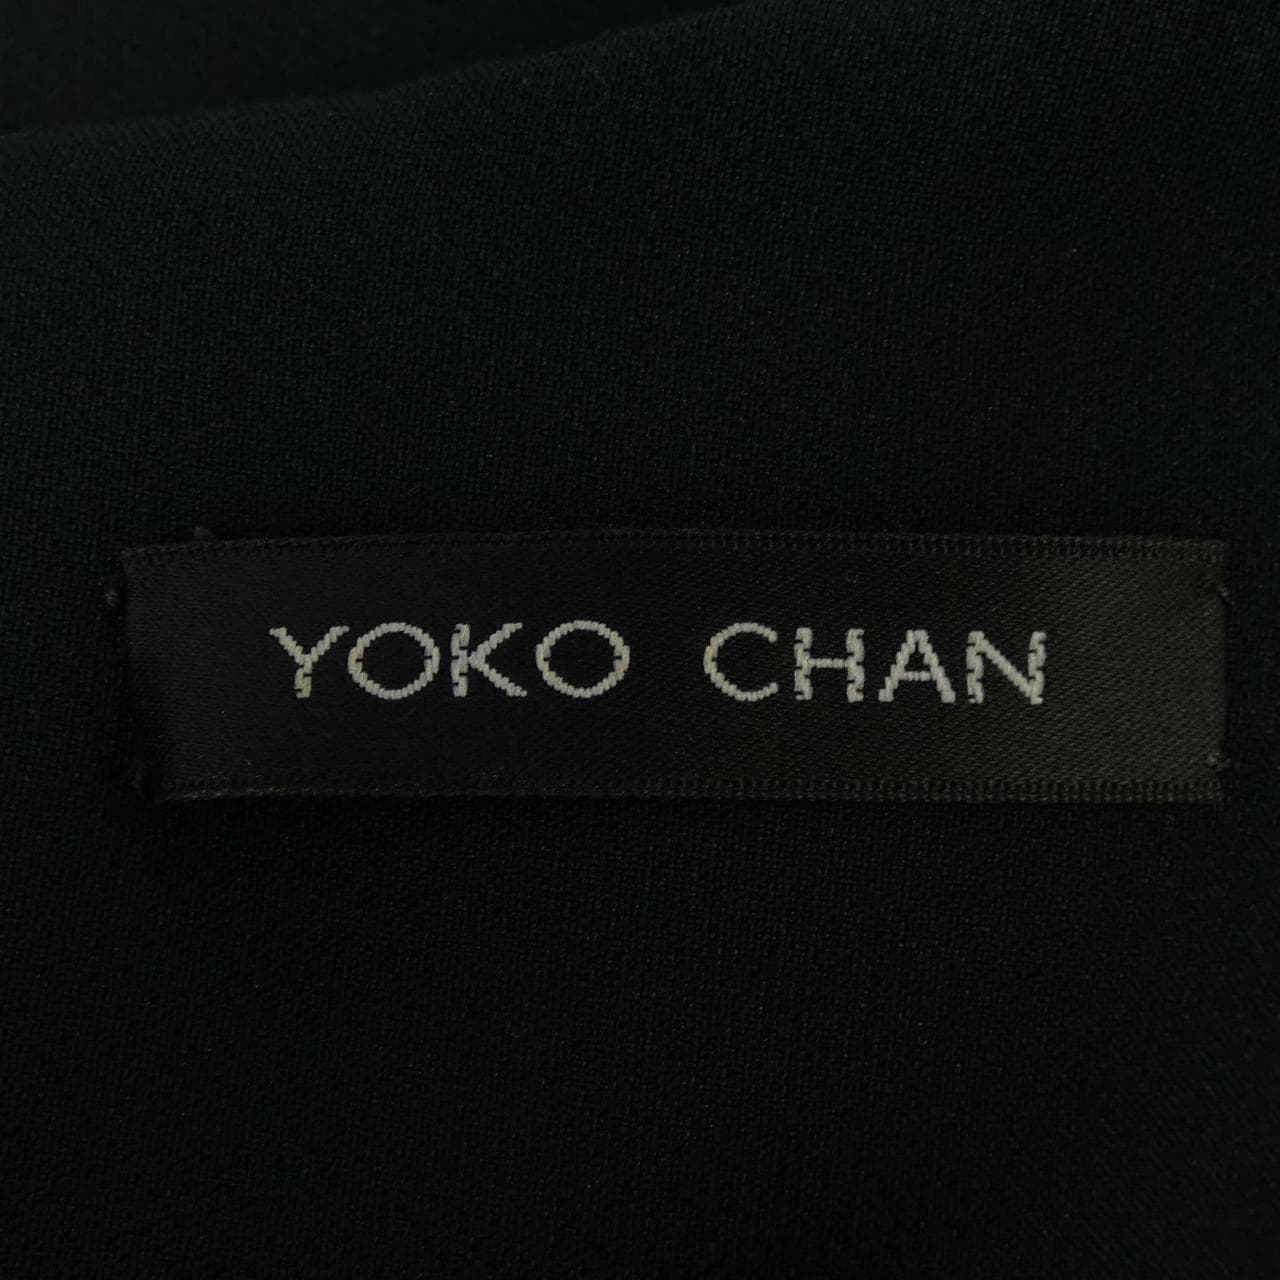 Yoko Chan YOKO CHAN dress